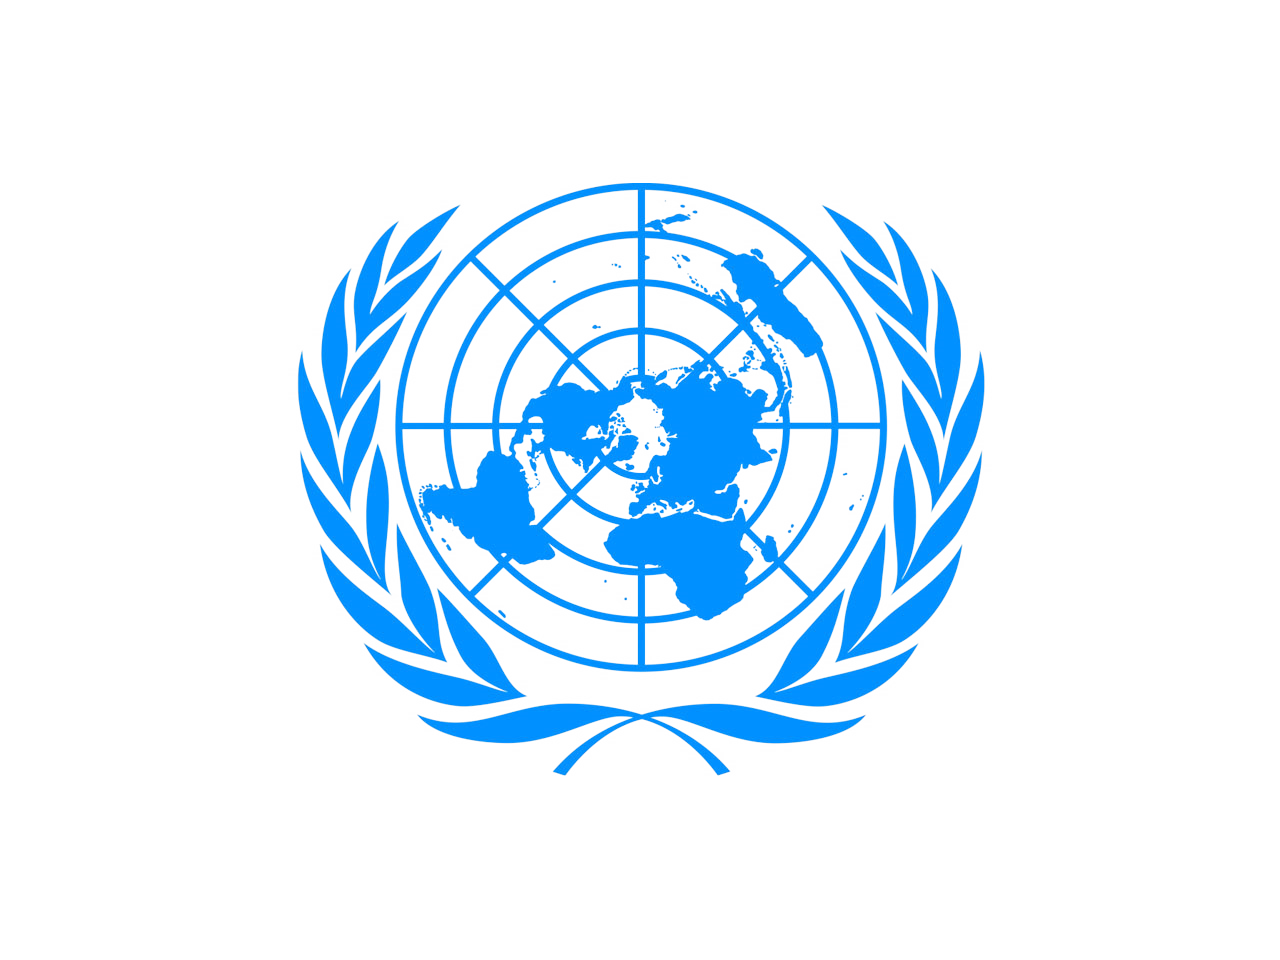 Европейская комиссия оон. Европейская экономическая комиссия ООН (ЕЭК ООН) эмблема. Генеральная Ассамблея ООН флаг. Комитет по внутреннему транспорту ЕЭК ООН. ЭКОСОС ООН 1945.